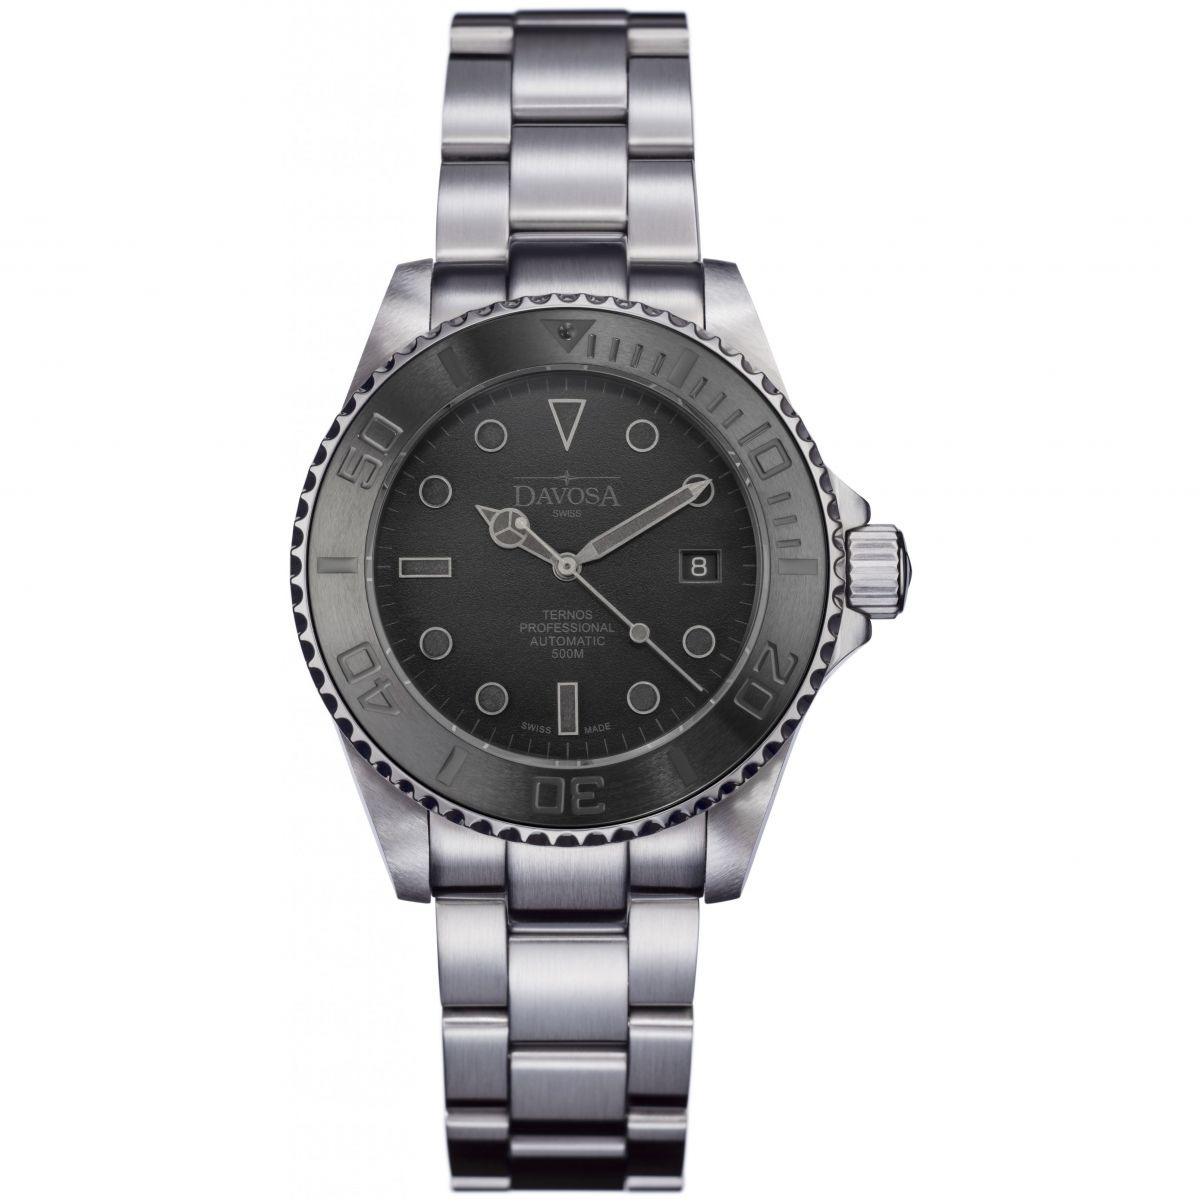 Davosa Watch in Grey - Watch Shop GOOFASH